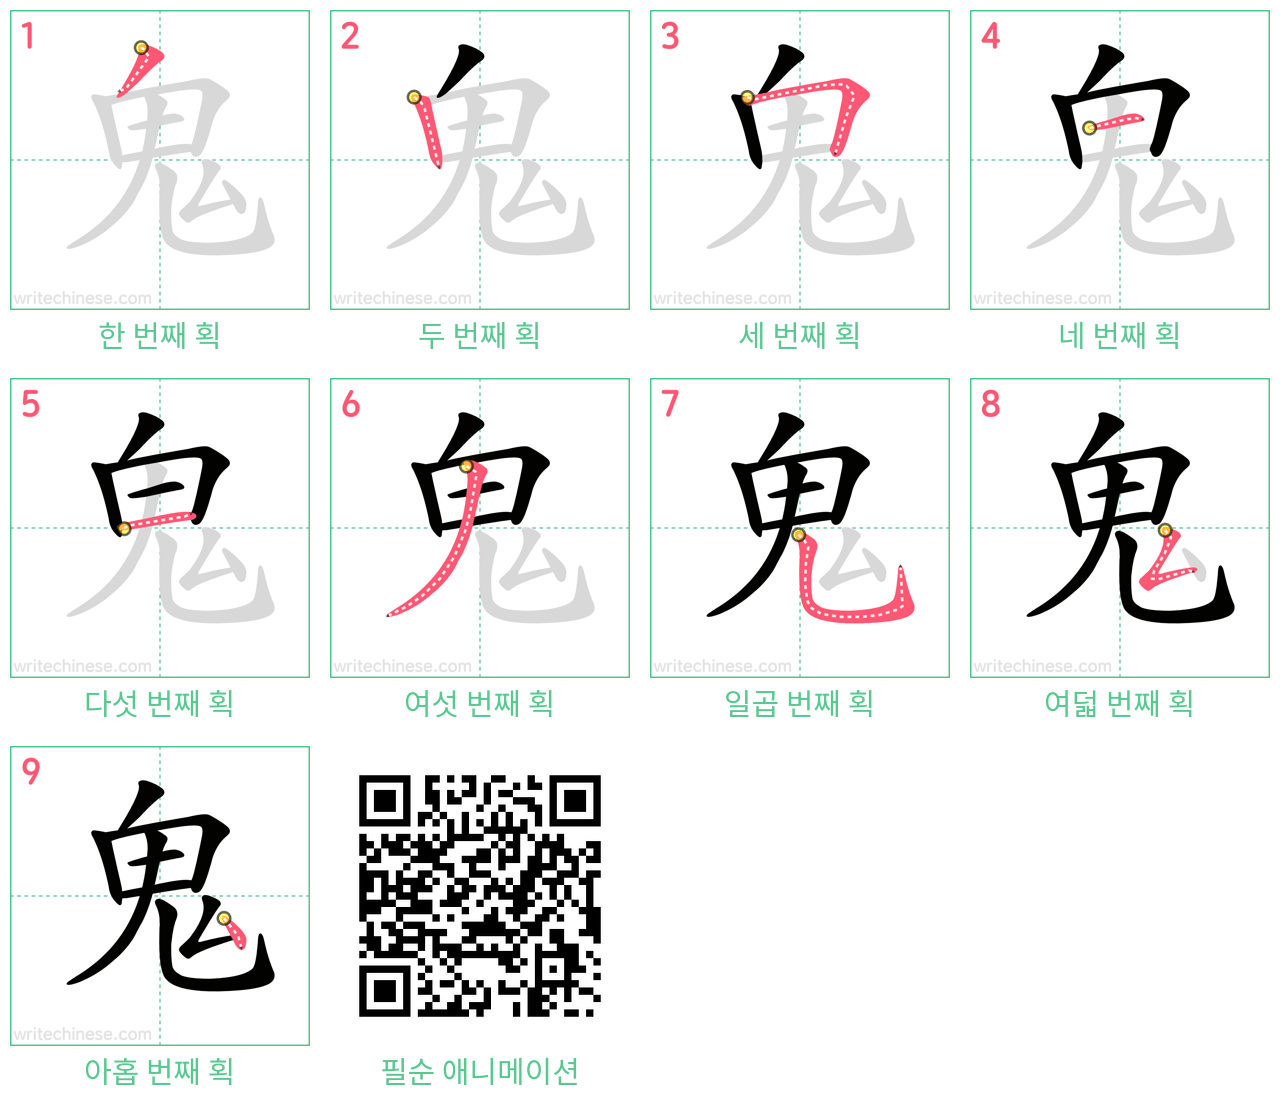 鬼 step-by-step stroke order diagrams